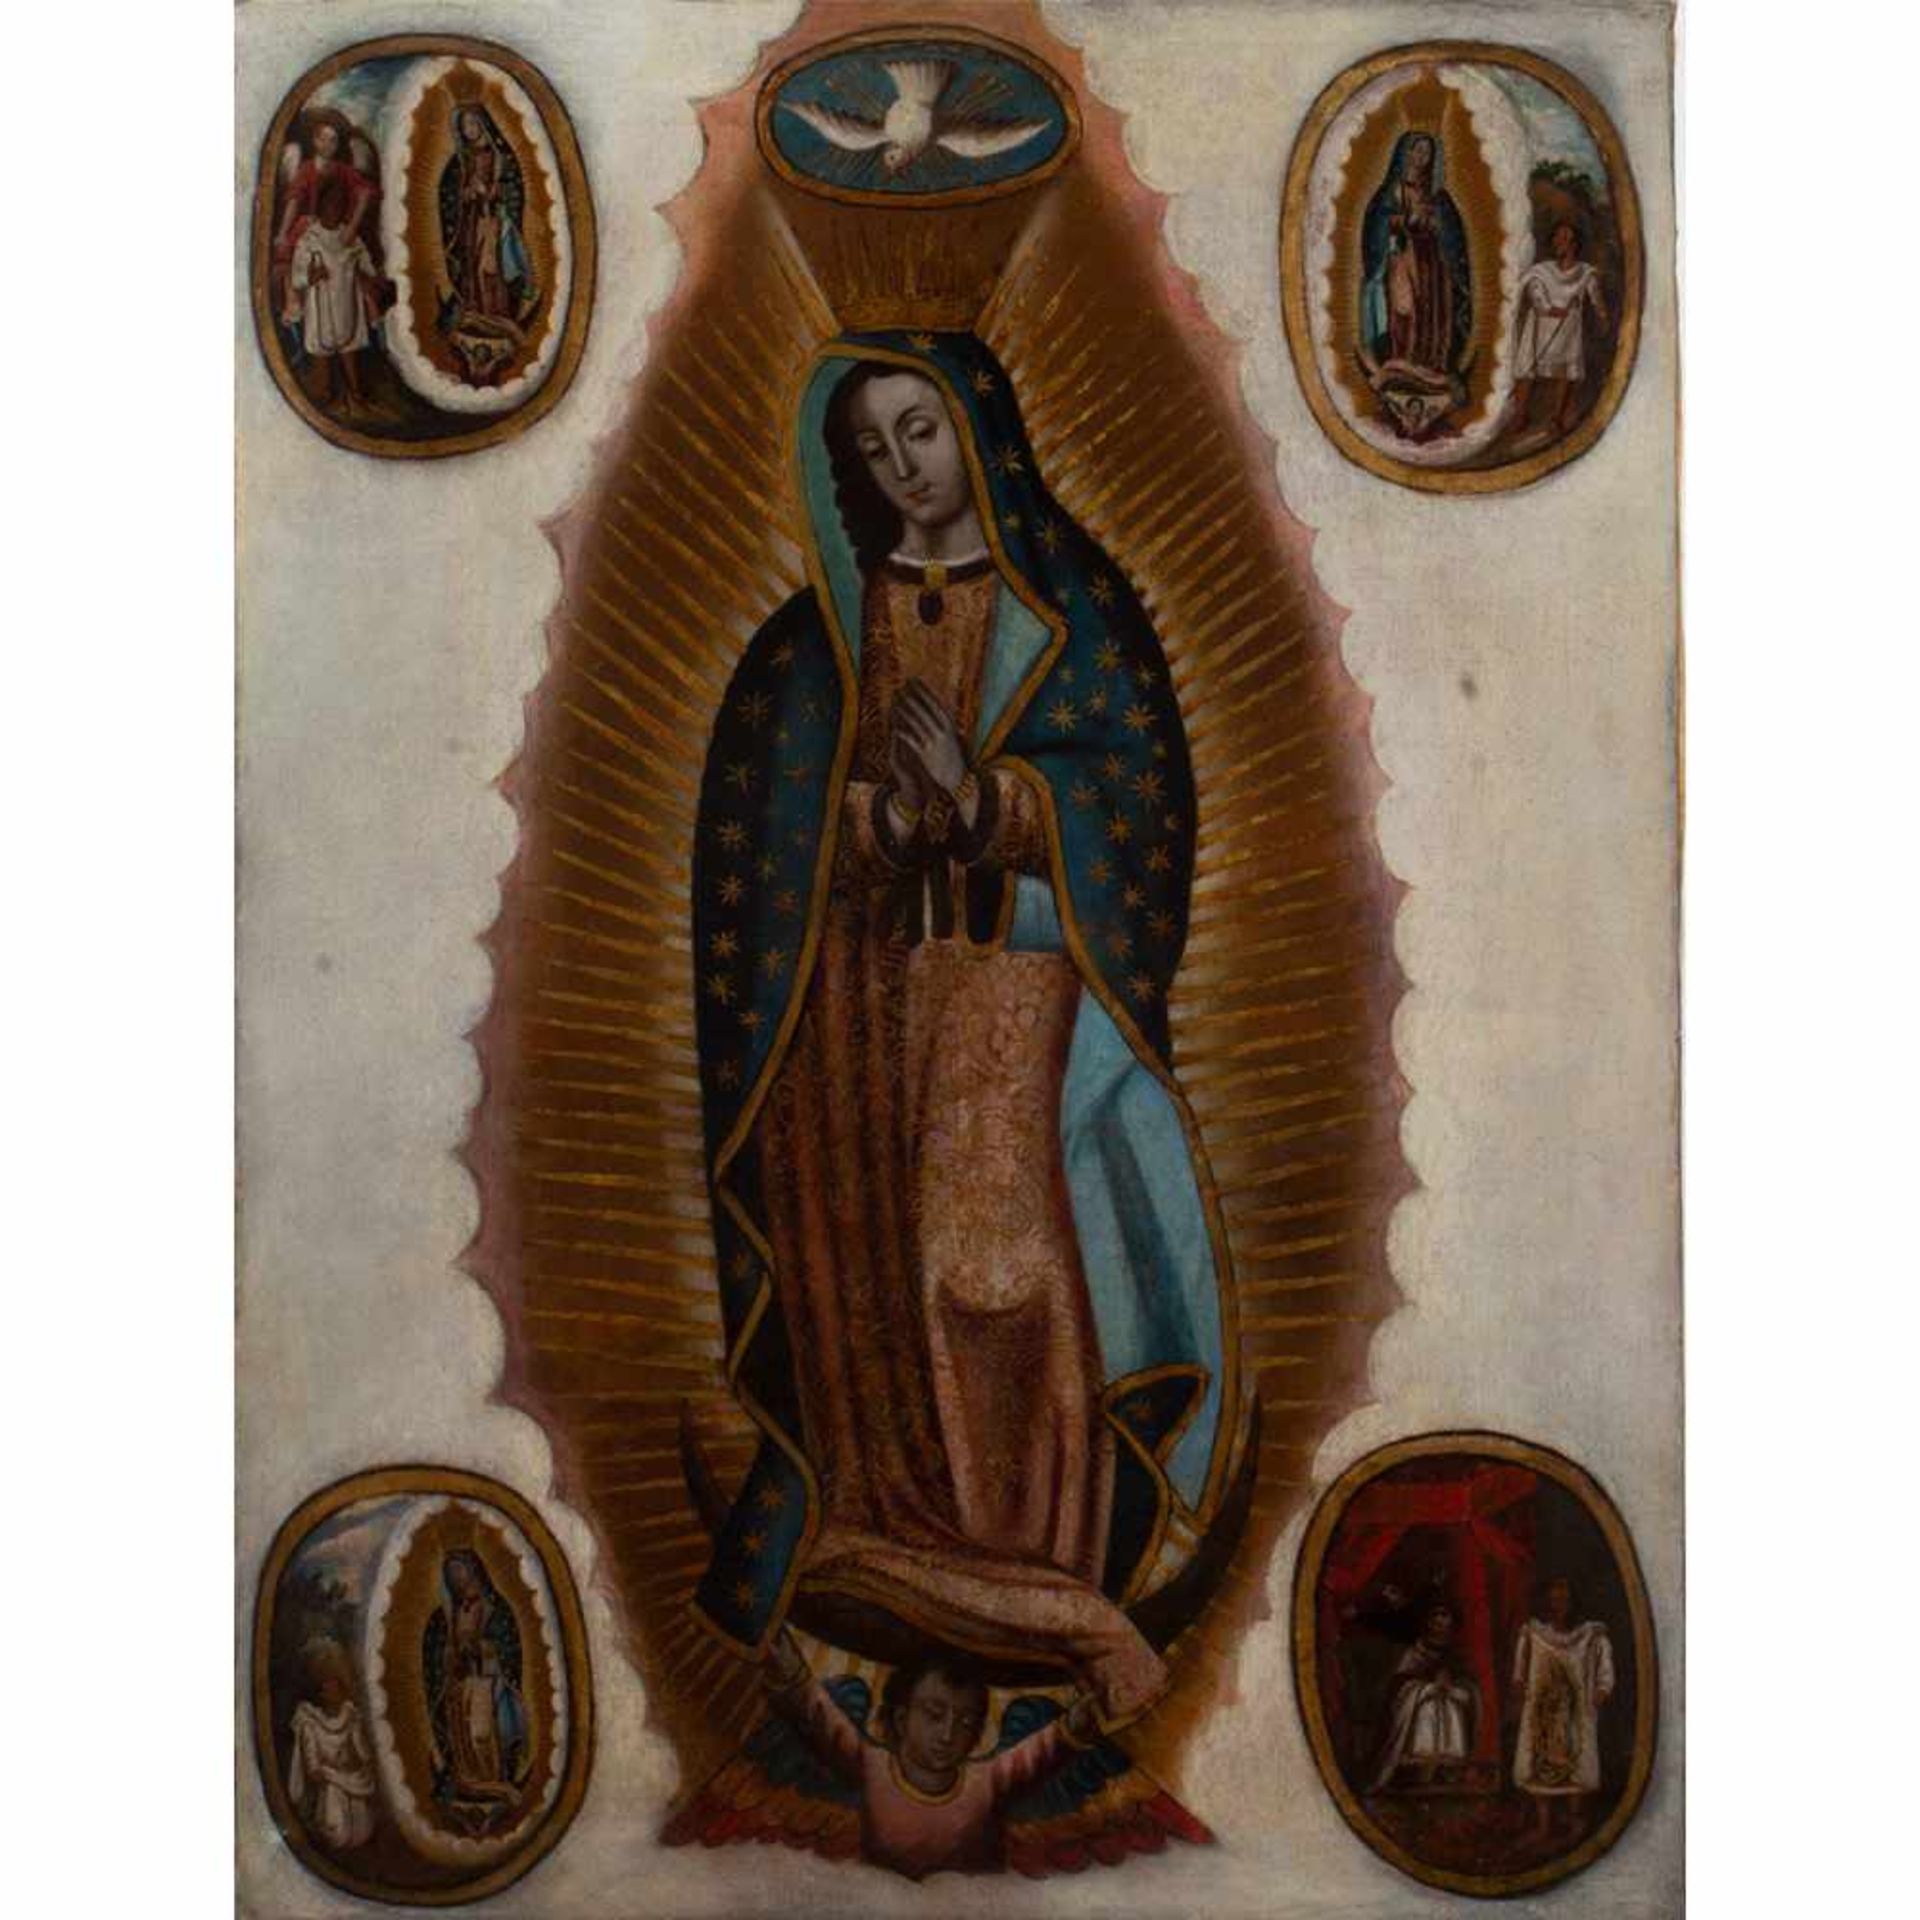 Escuela colonial, México, del siglo XVIII. "Virgen de Guadalupe".Escuela colonial, México, de